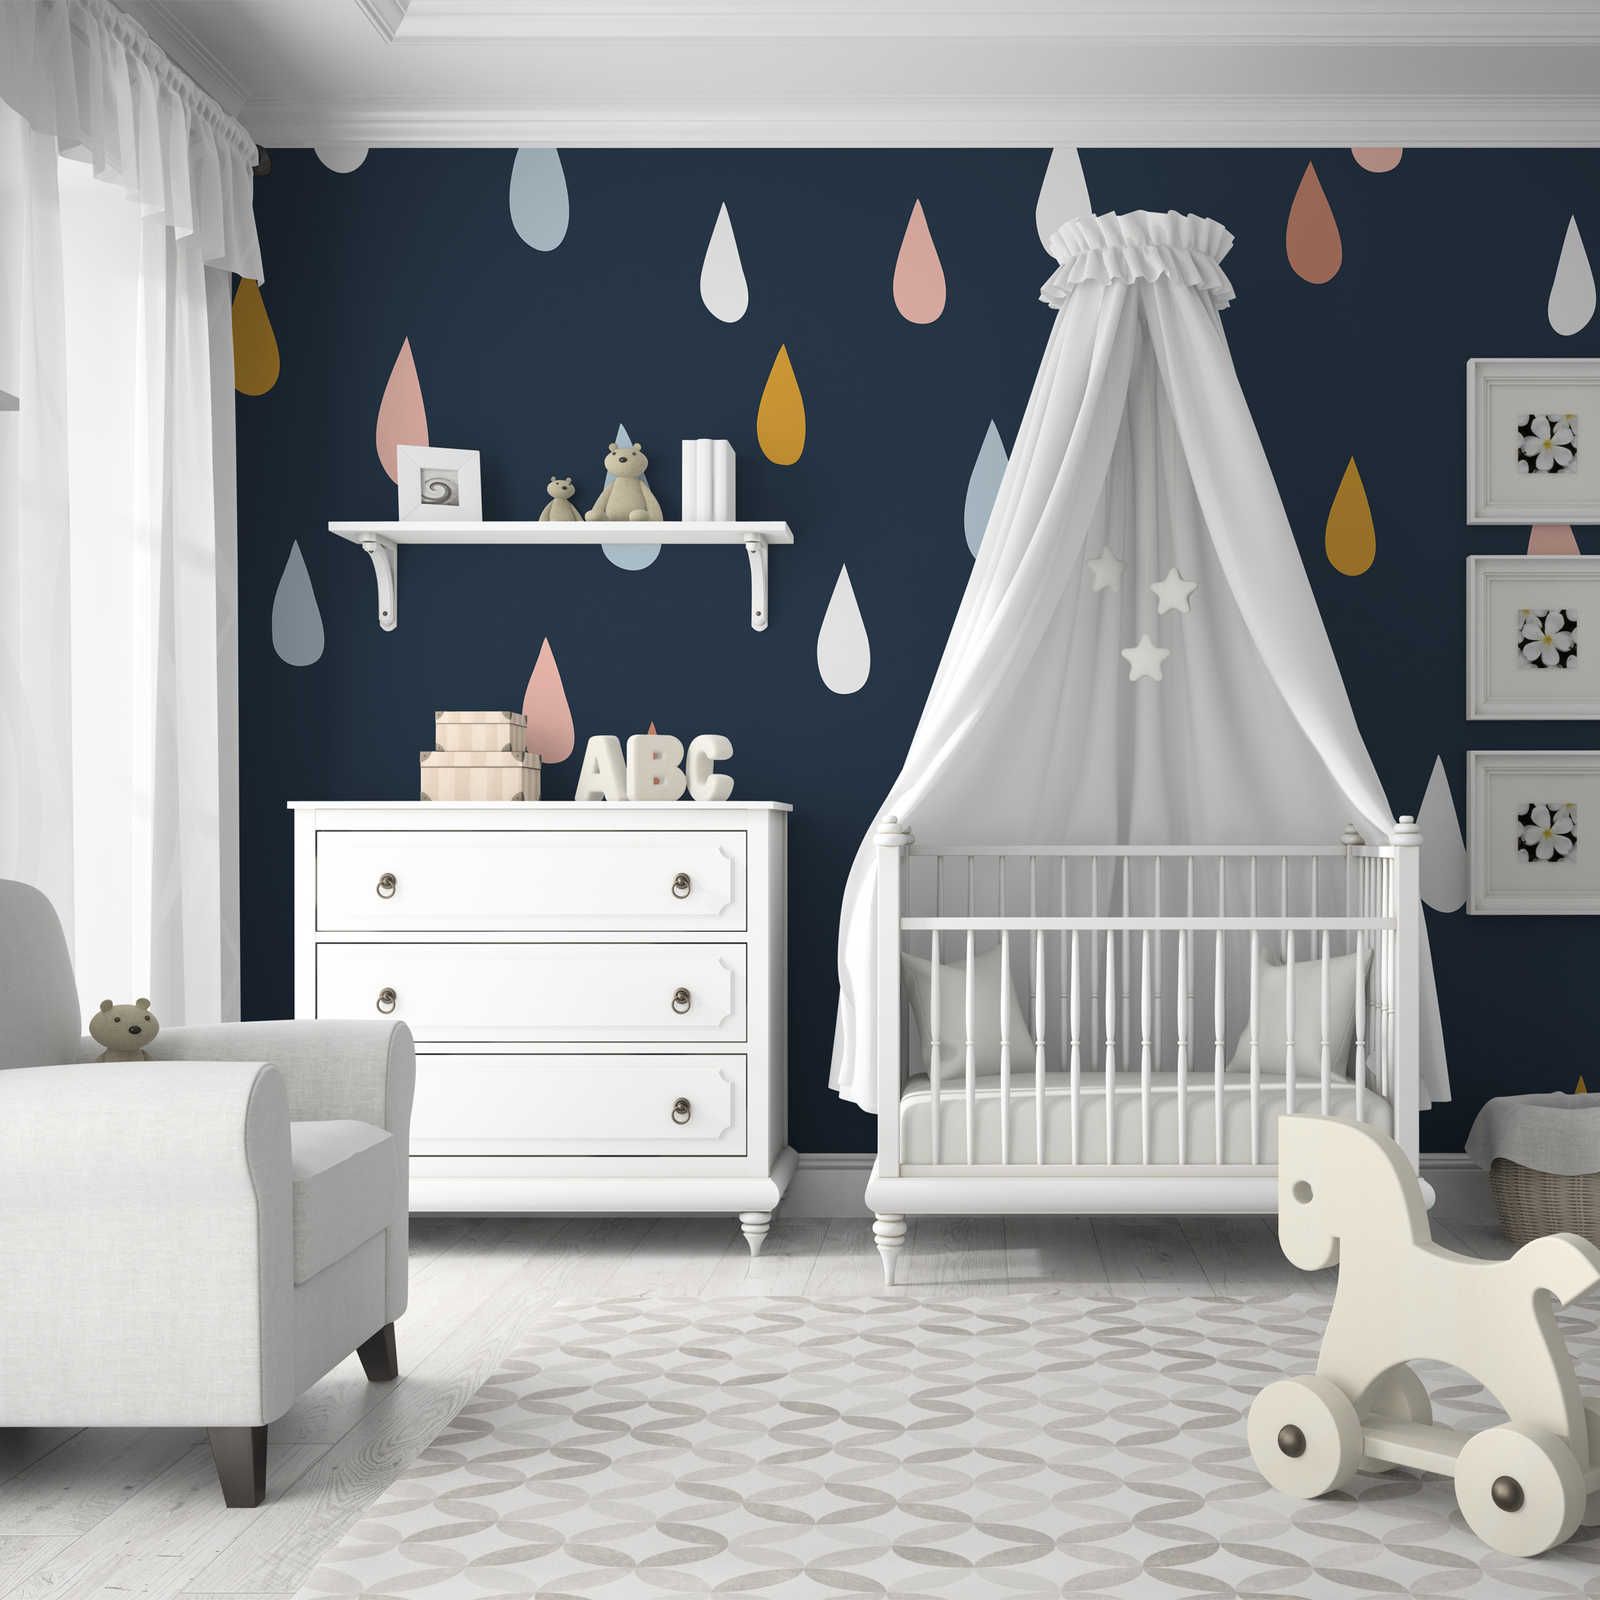 Fototapete fürs Kinderzimmer mit bunten Tropfen – Glattes & perlmutt-schimmerndes Vlies
